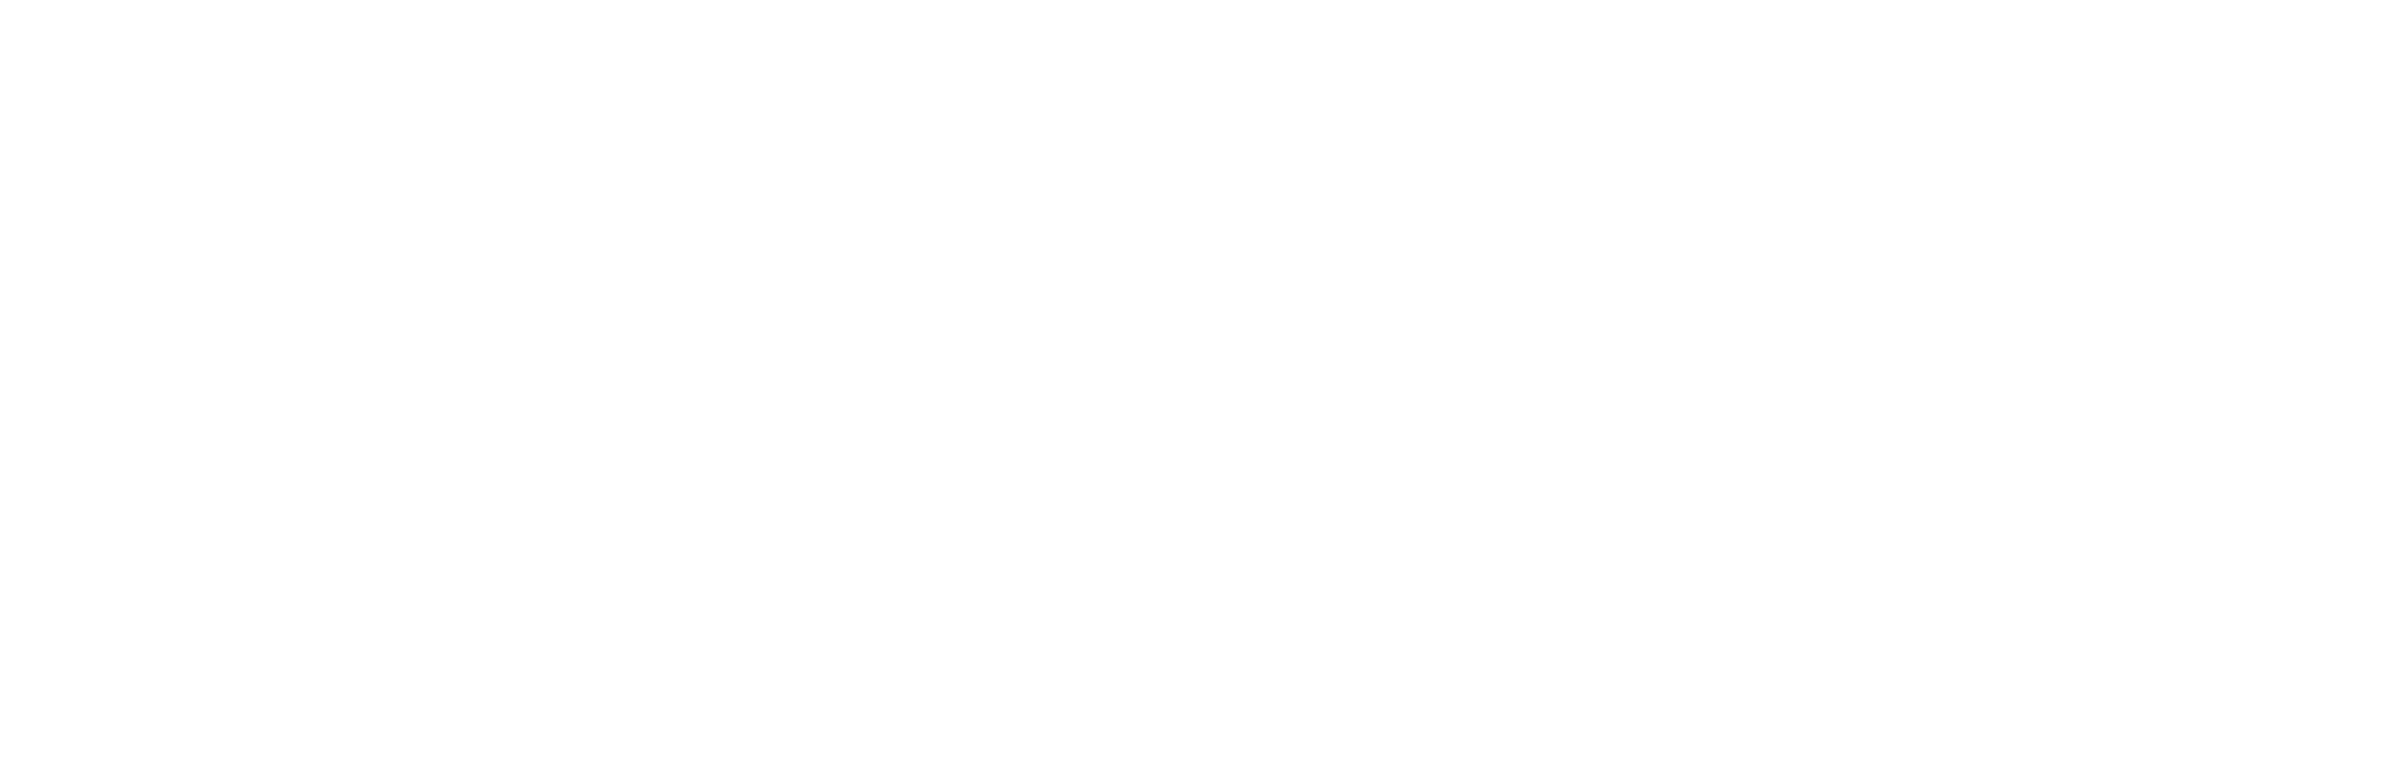 style-me-pretty-logo